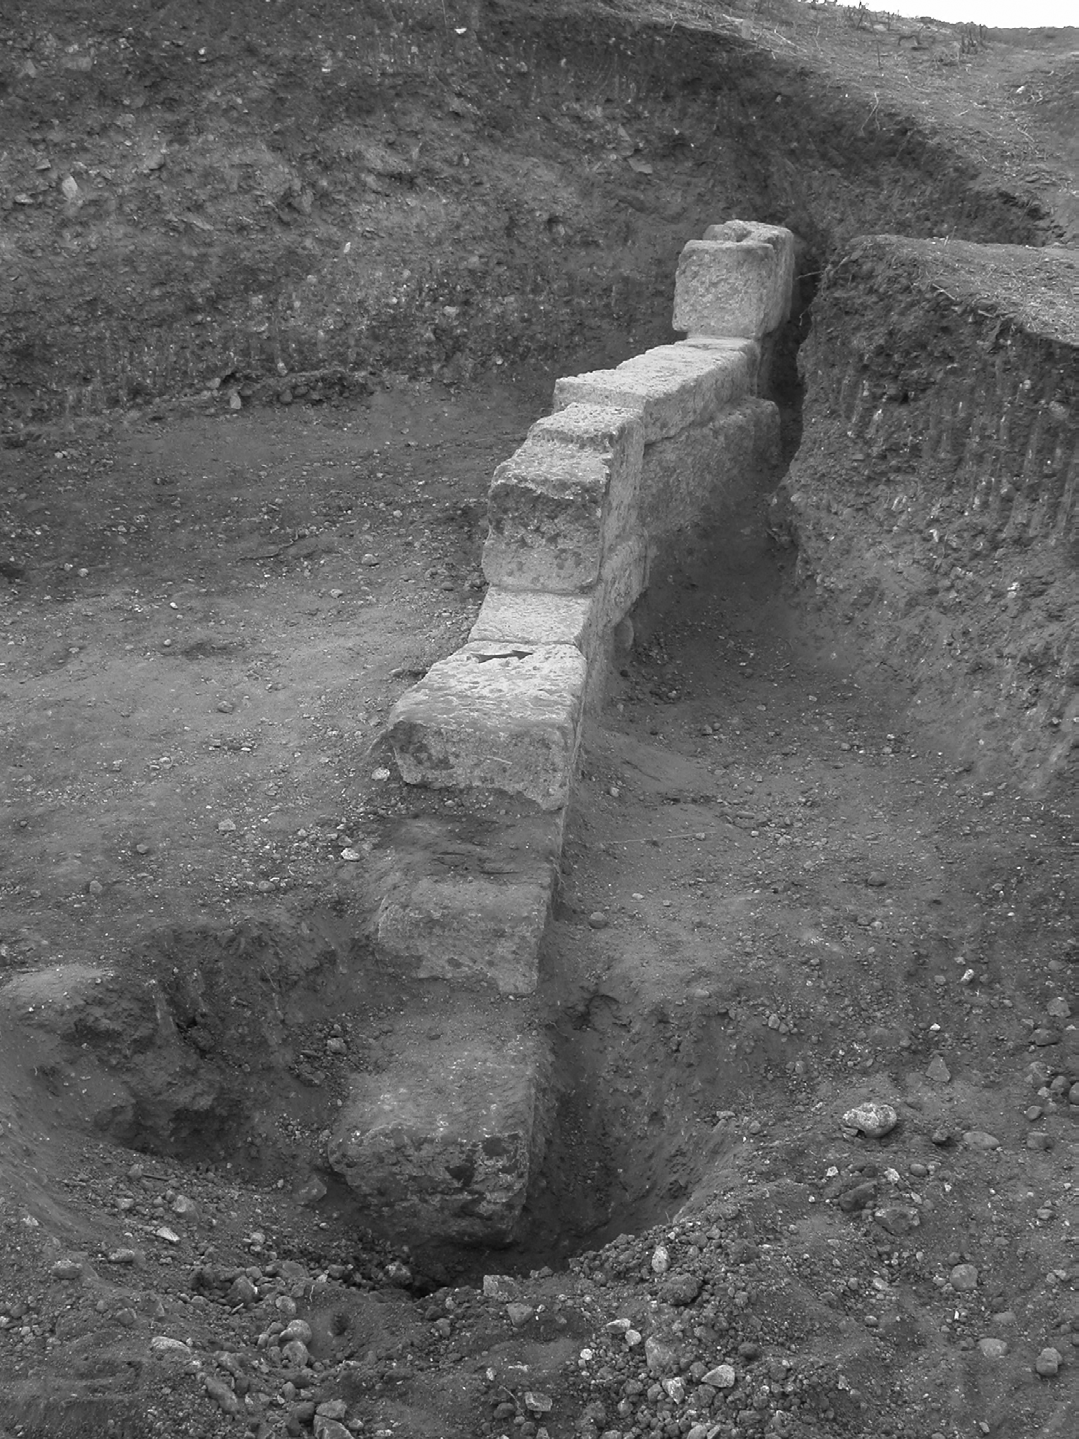 212 Yerbilimleri Şekil 5. A1 alanında önerilen kazı sonucunda ortaya çıkarılan duvar. Figure 5. The wall excavated at the suggested location at A1 site.